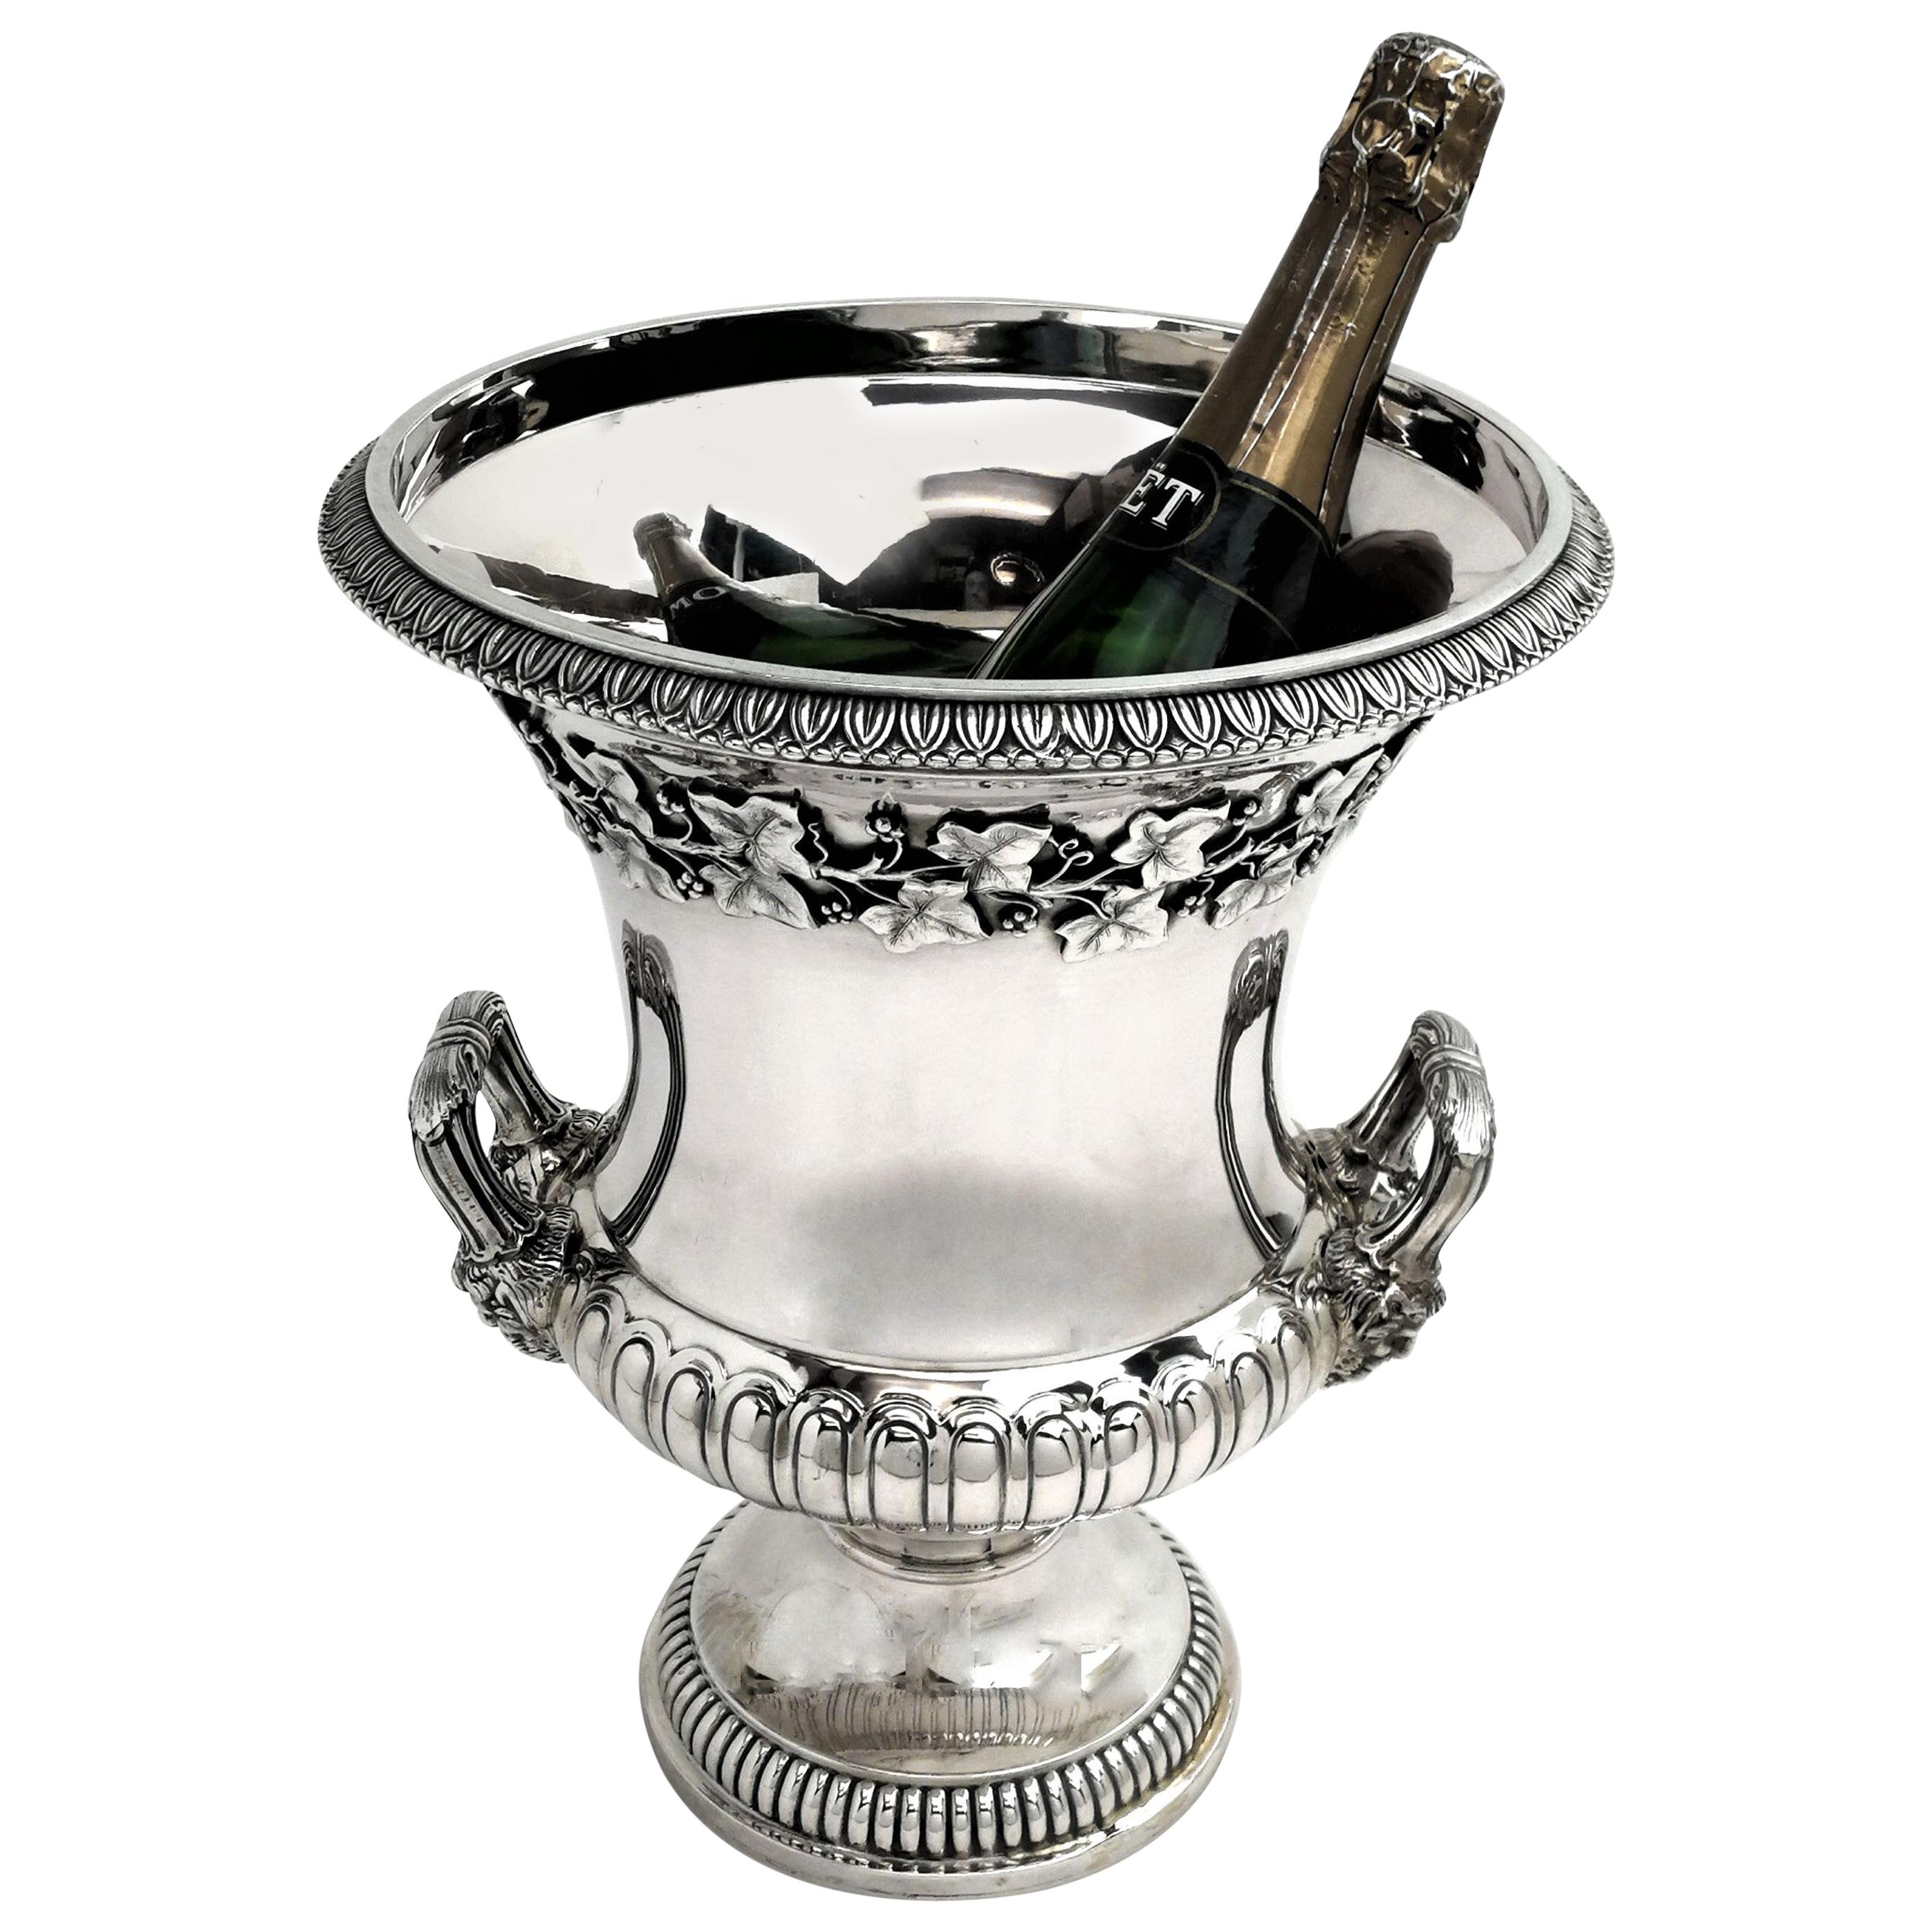 Rare Italian Silver Champagne Bottle Holder circa 1895